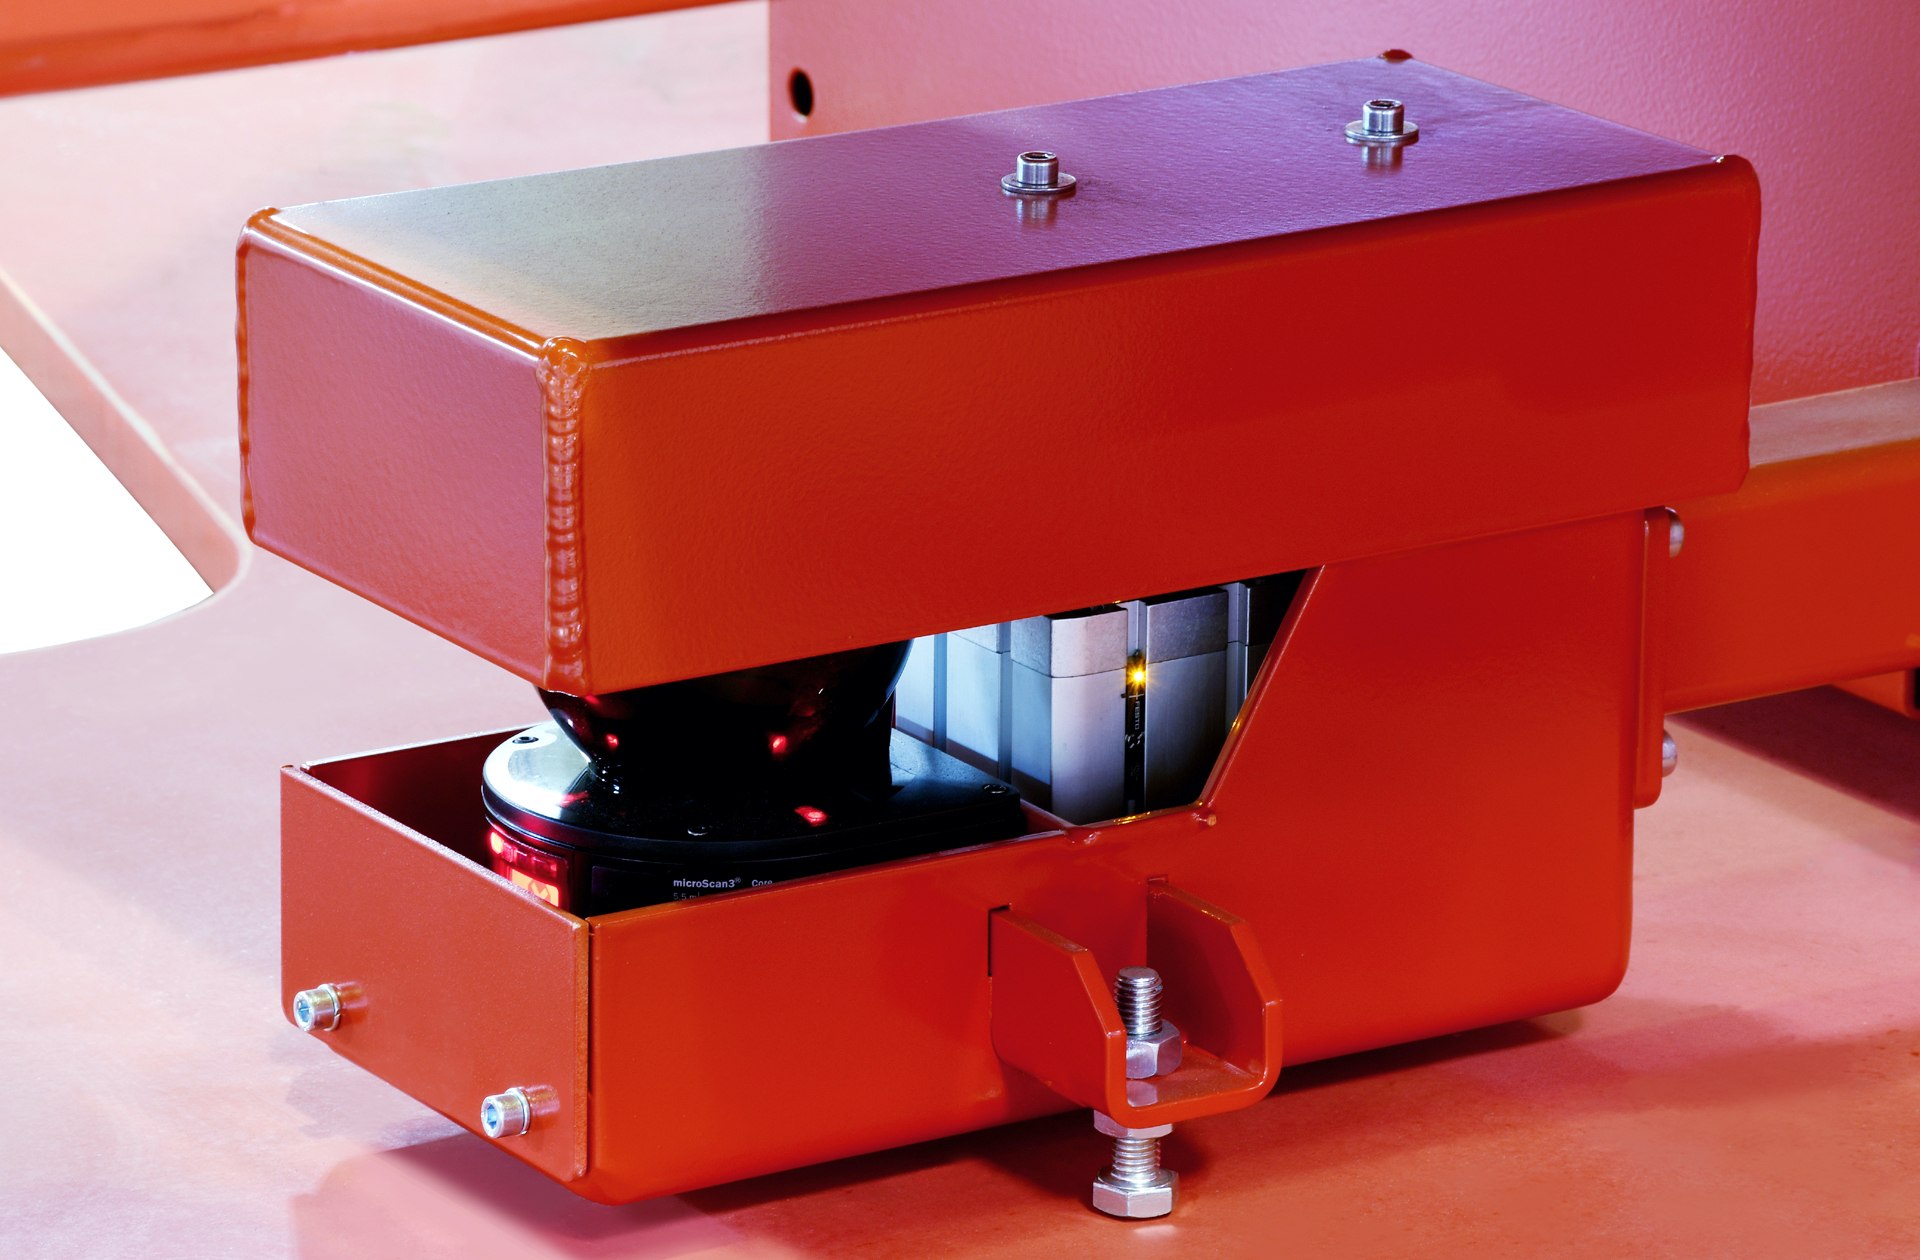 Ein Laserscanner überwachte bei dem Manipulator von Leiritz den gesamten Gefahrenbereich sicher und zuverlässig.